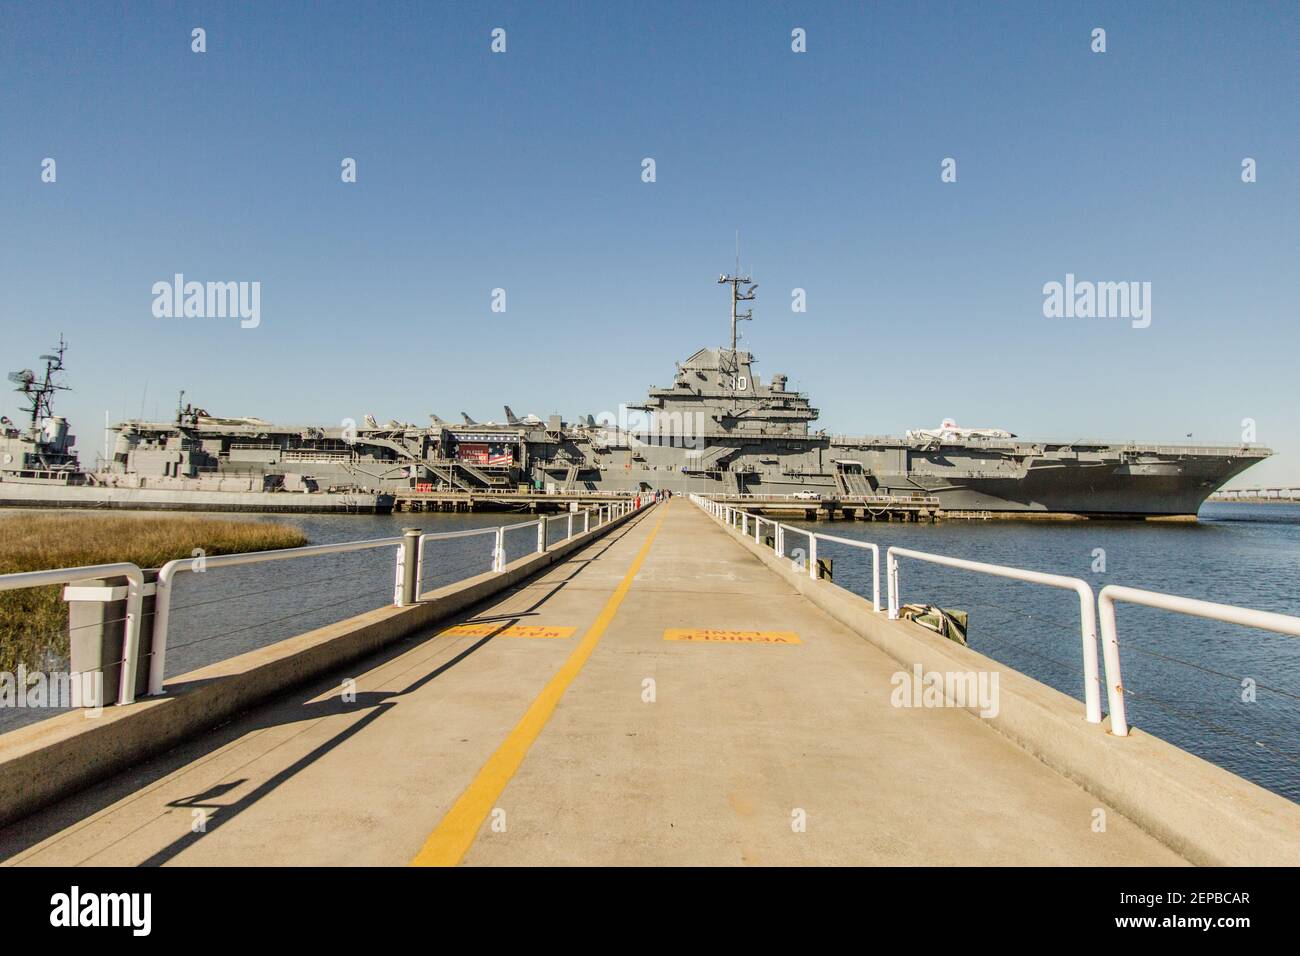 Mount Pleasant, Carolina del Sur, EE.UU. - 21 de febrero de 2021 - el portaaviones USS Yorktown opera ahora como un museo y monumento conmemorativo en Patriots Point. Foto de stock